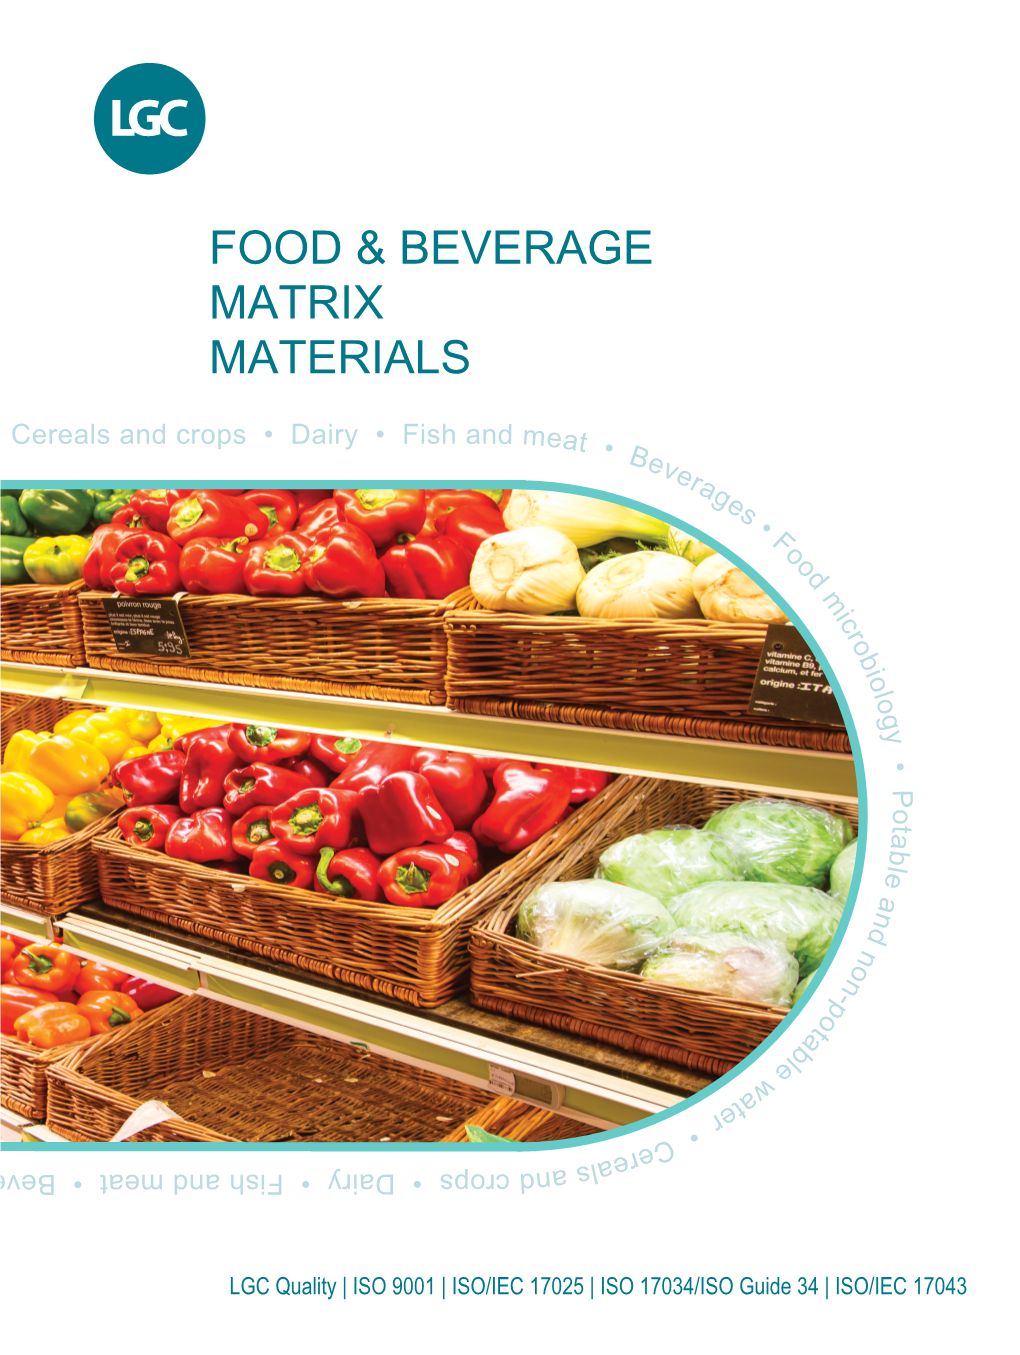 Food & Beverage Matrix Materials